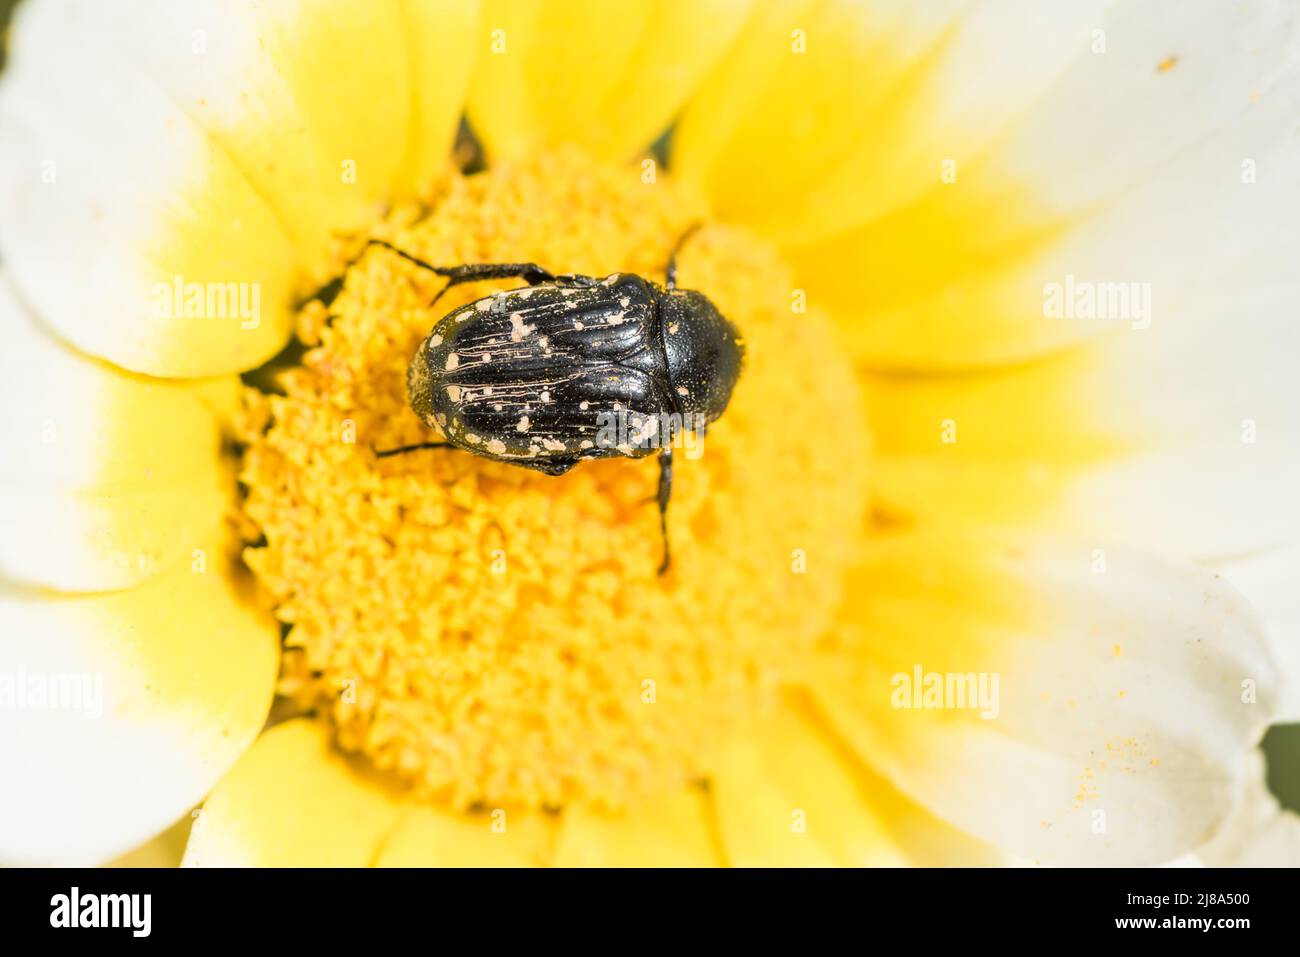 Nourrissant le scarab des fleurs du Moyen-Orient (Oxythyrea cinctella) - des lignes blanches sur la partie inférieure du thorax indiquent que c'est cette espèce. Banque D'Images